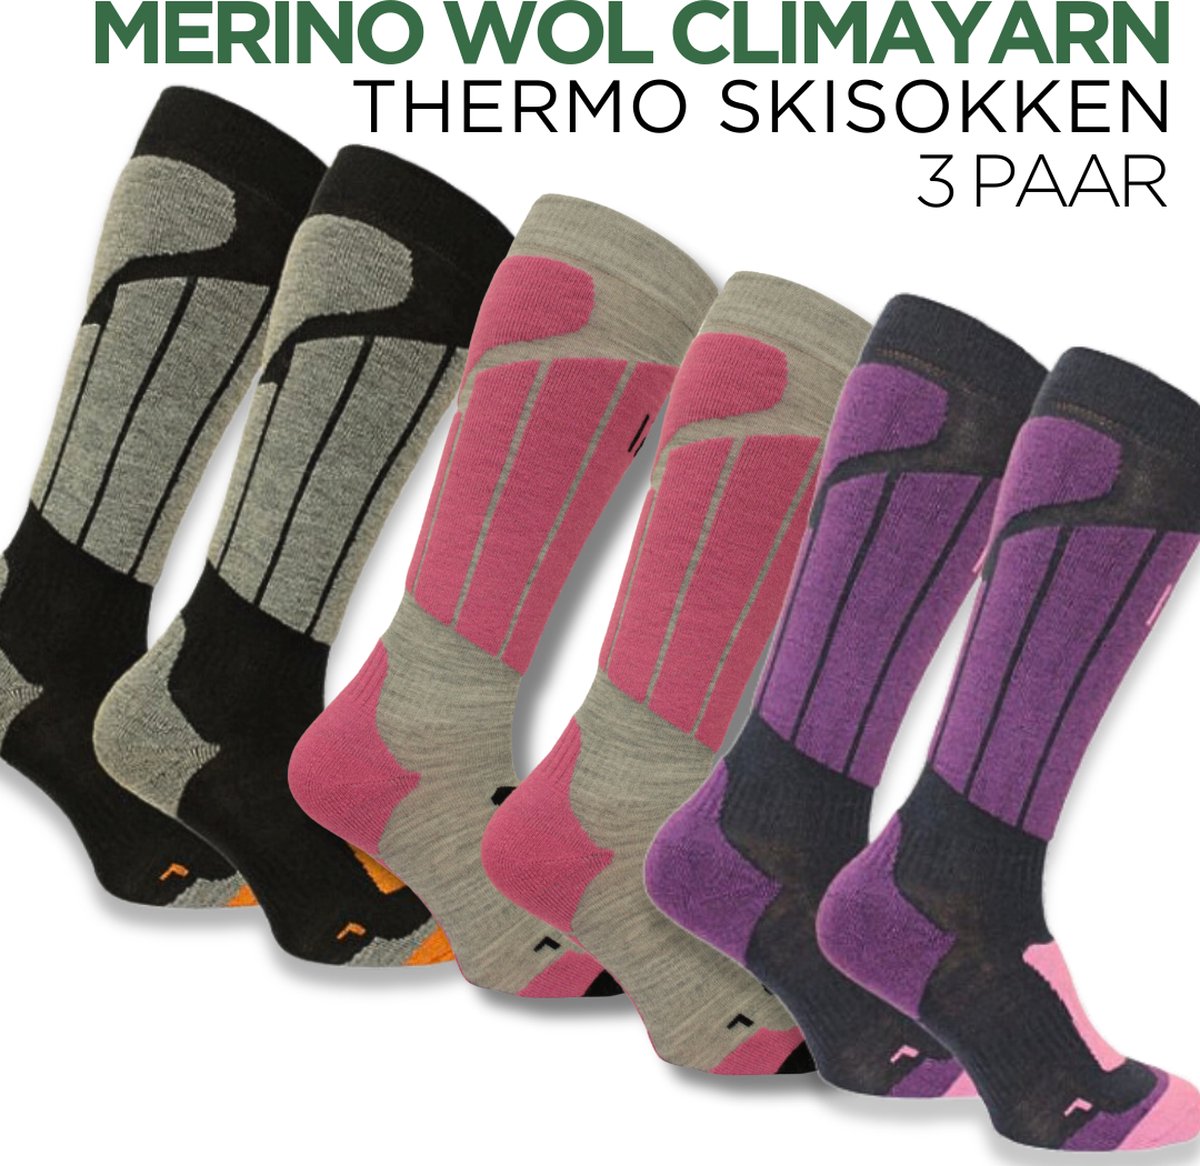 Norfolk Skisokken - 3 Paar - Anti zweet Merino wol Climayarn - Antiblaren Thermosokken - Skisokken met Schokabsorptie Zonedemping - Warm en Droog - Maat 39-42 - Roze/Paars/Zwart - Aspen